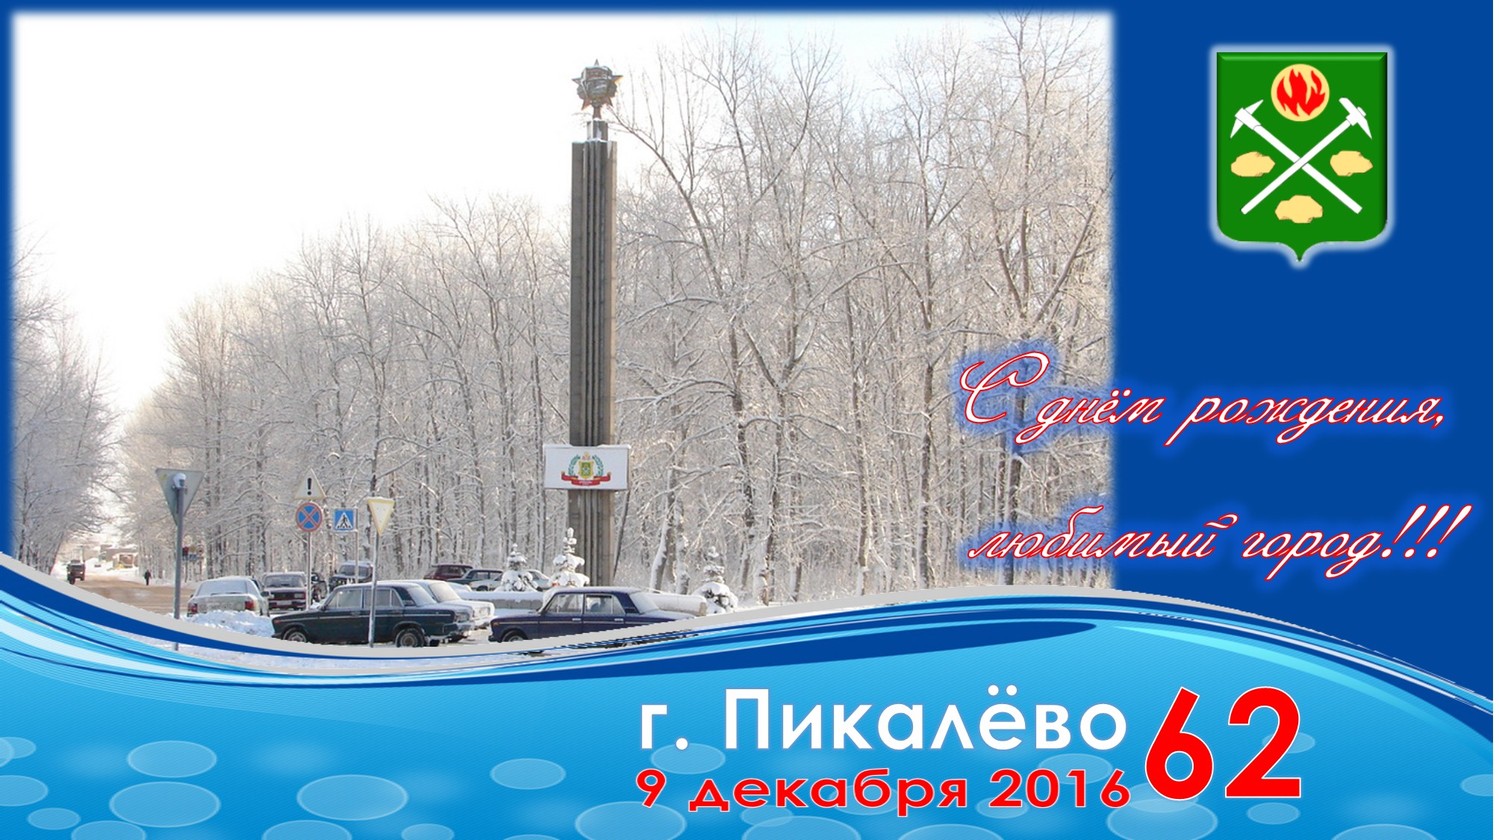 9 декабря - День Героев Отечества в России и День города Пикалево.